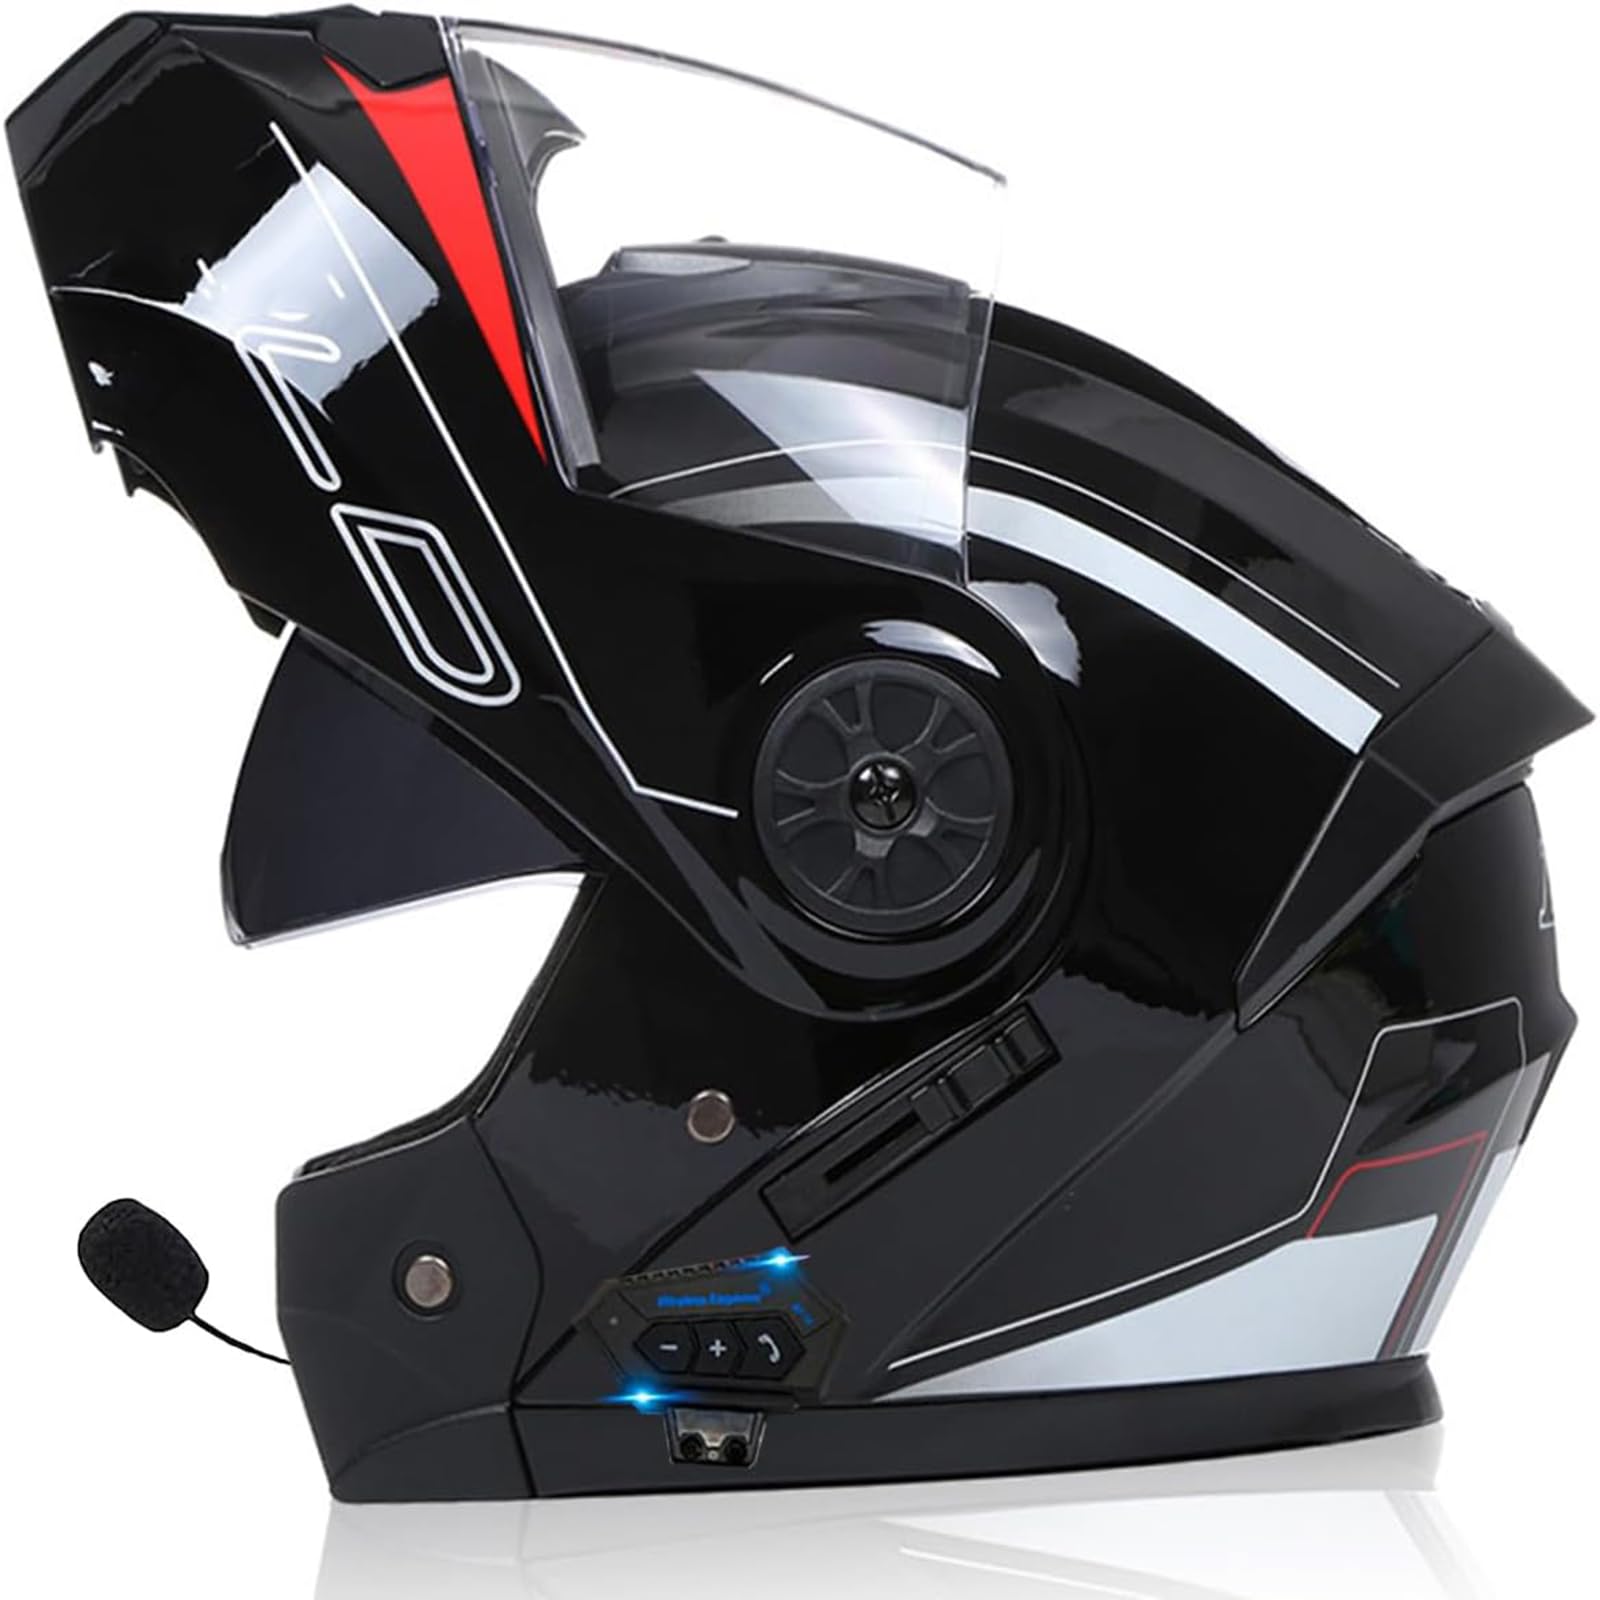 Anti-Fog Doppelspiegel Bluetooth Klapphelm Motorradhelm, Damen Herren Motocross Sturzhelm ECE Zertifiziert Klapphelm Integrierter Motorrad Bluetooth Helm Für Automatische Reaktion von SDPPTY